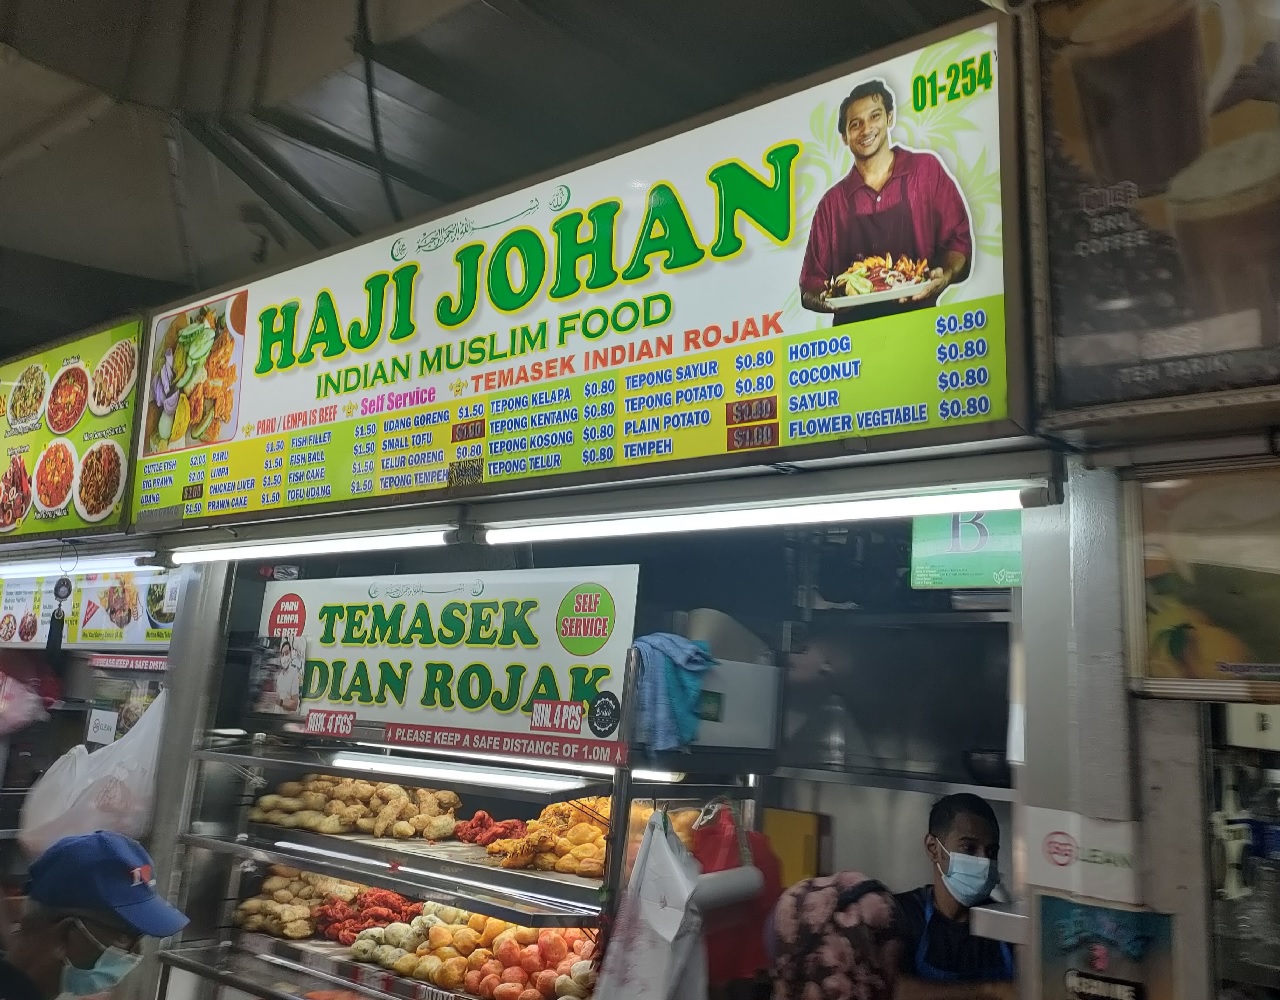 Haji Johan Indian Muslim Food_Temasek Indian Rojak(01-254)